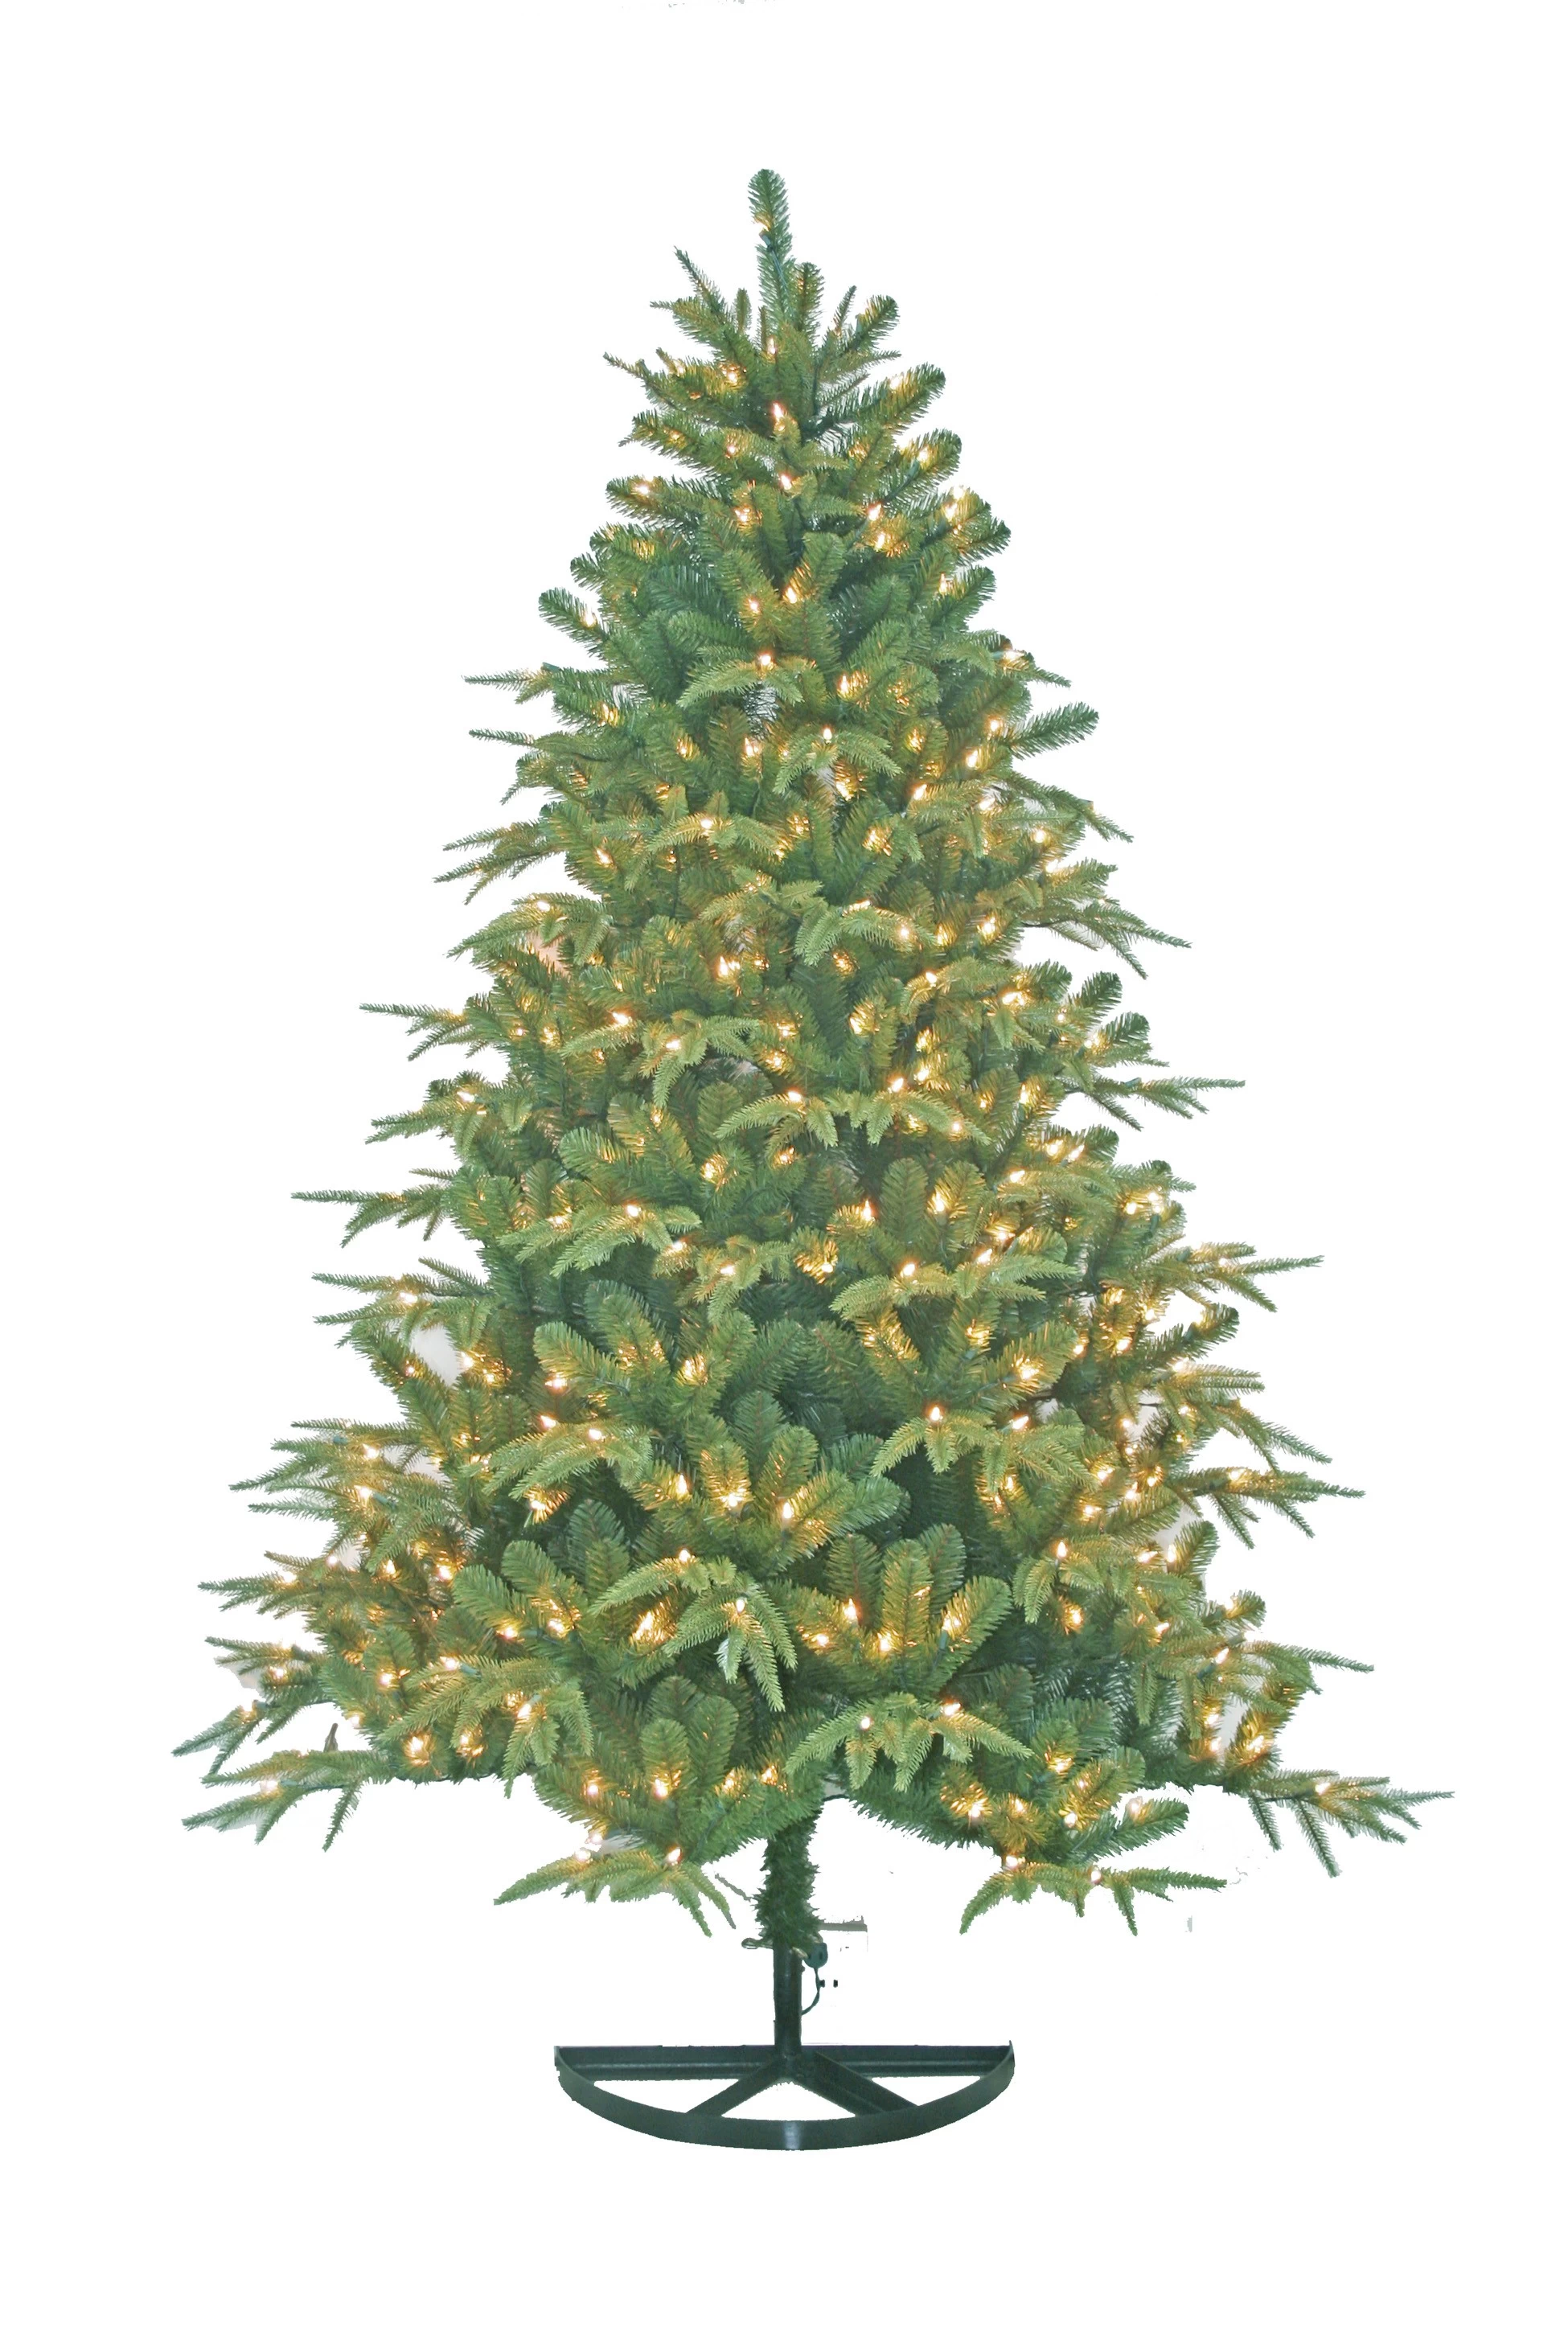 porcelana árbol de decoraciones de Navidad al aire libre, árboles artificiales, mejor venta de artículos de Navidad fabricante